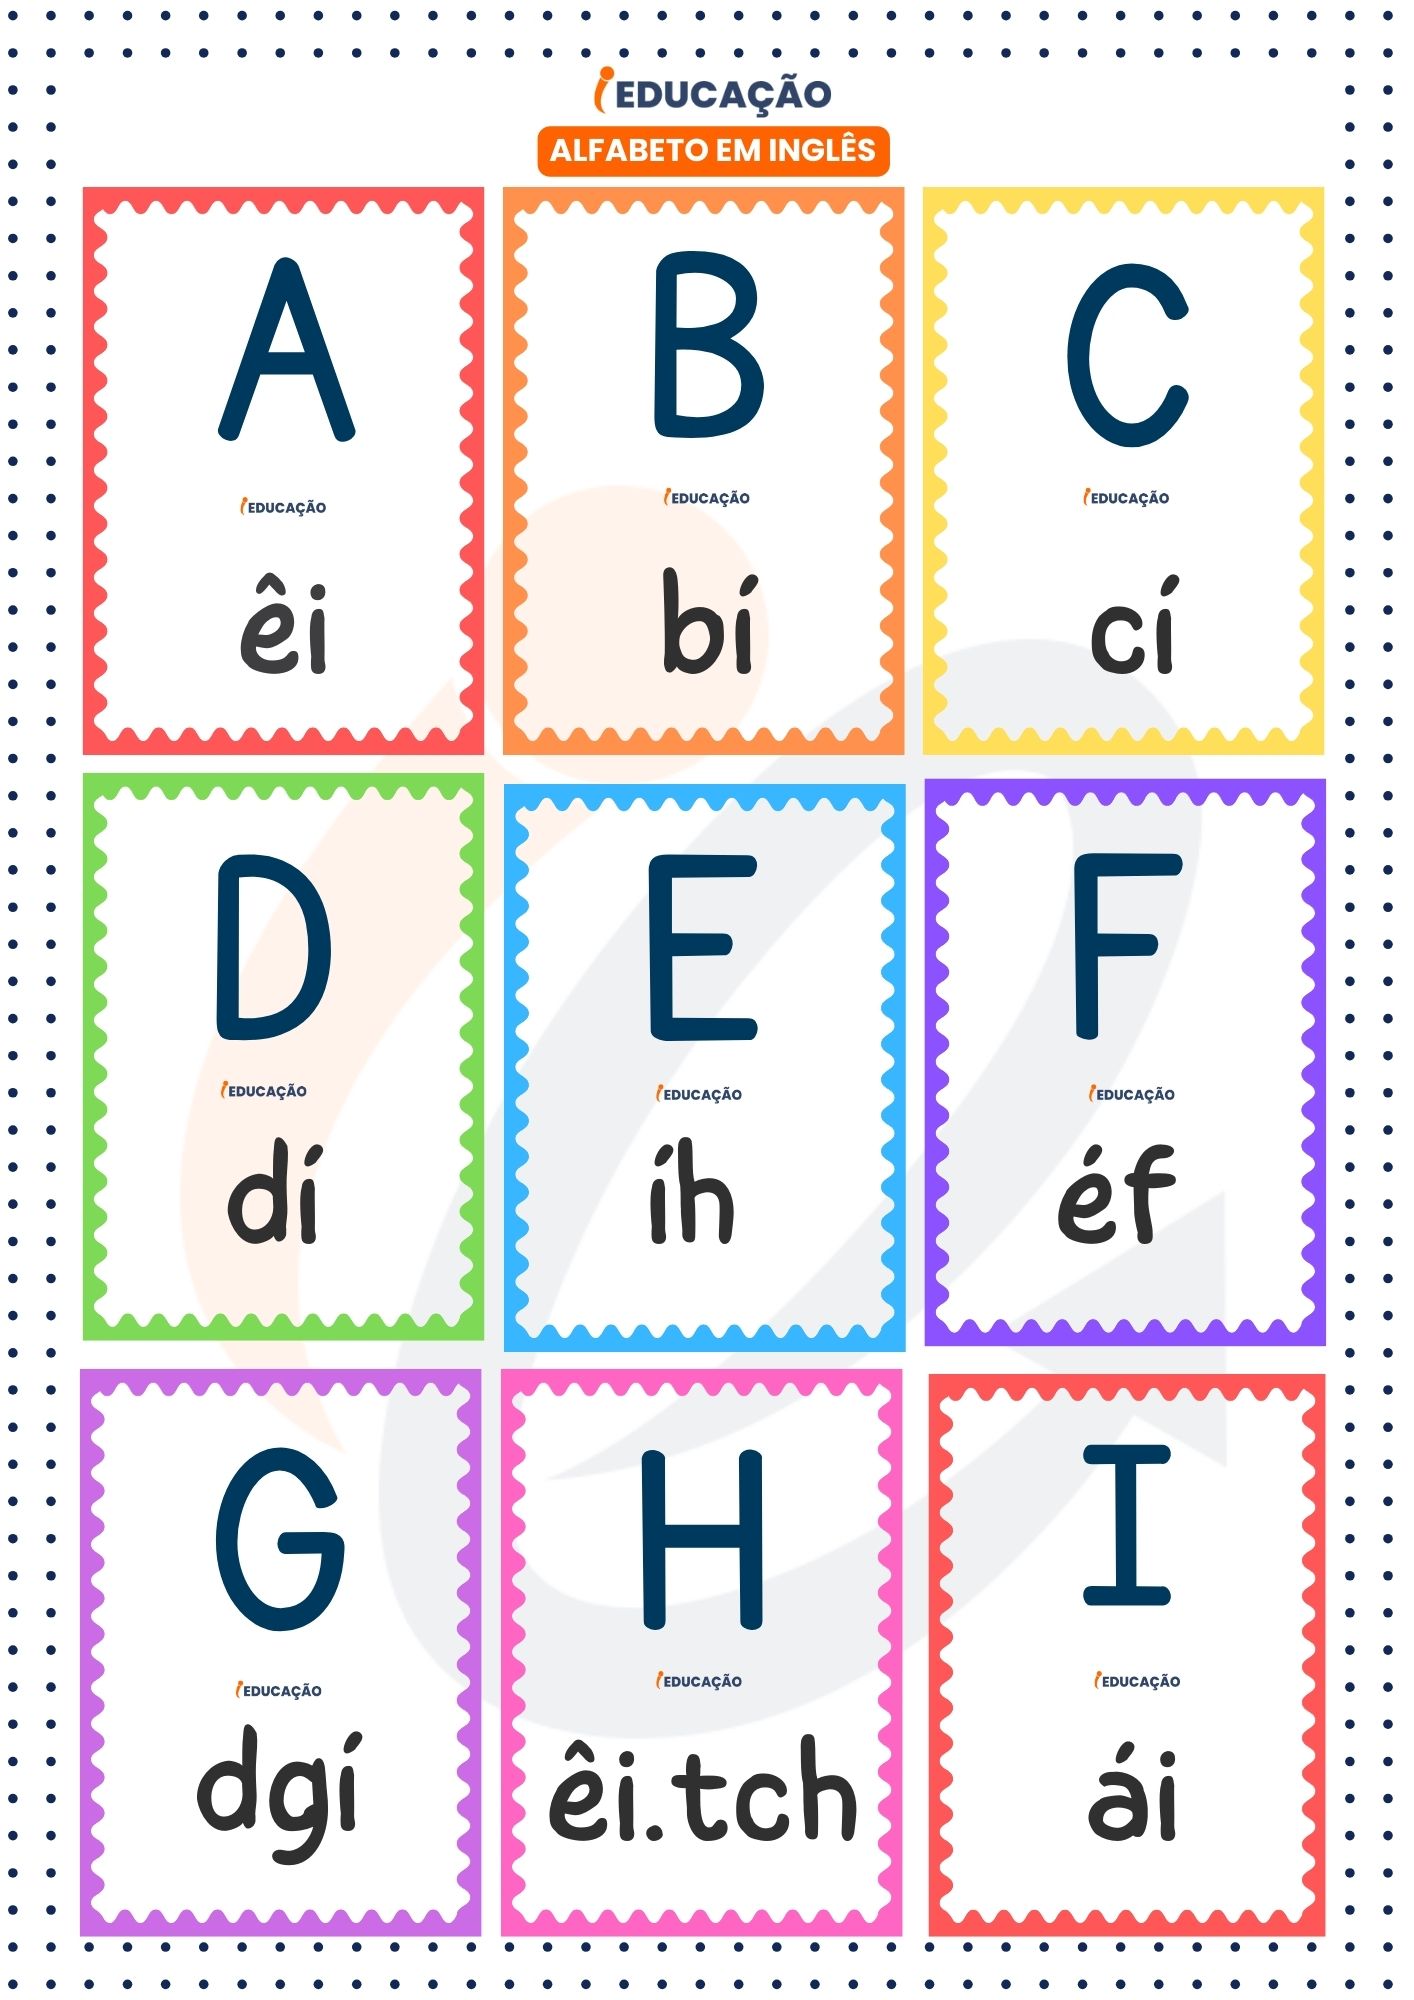 Alfabeto em inglês letras com letras de A a I